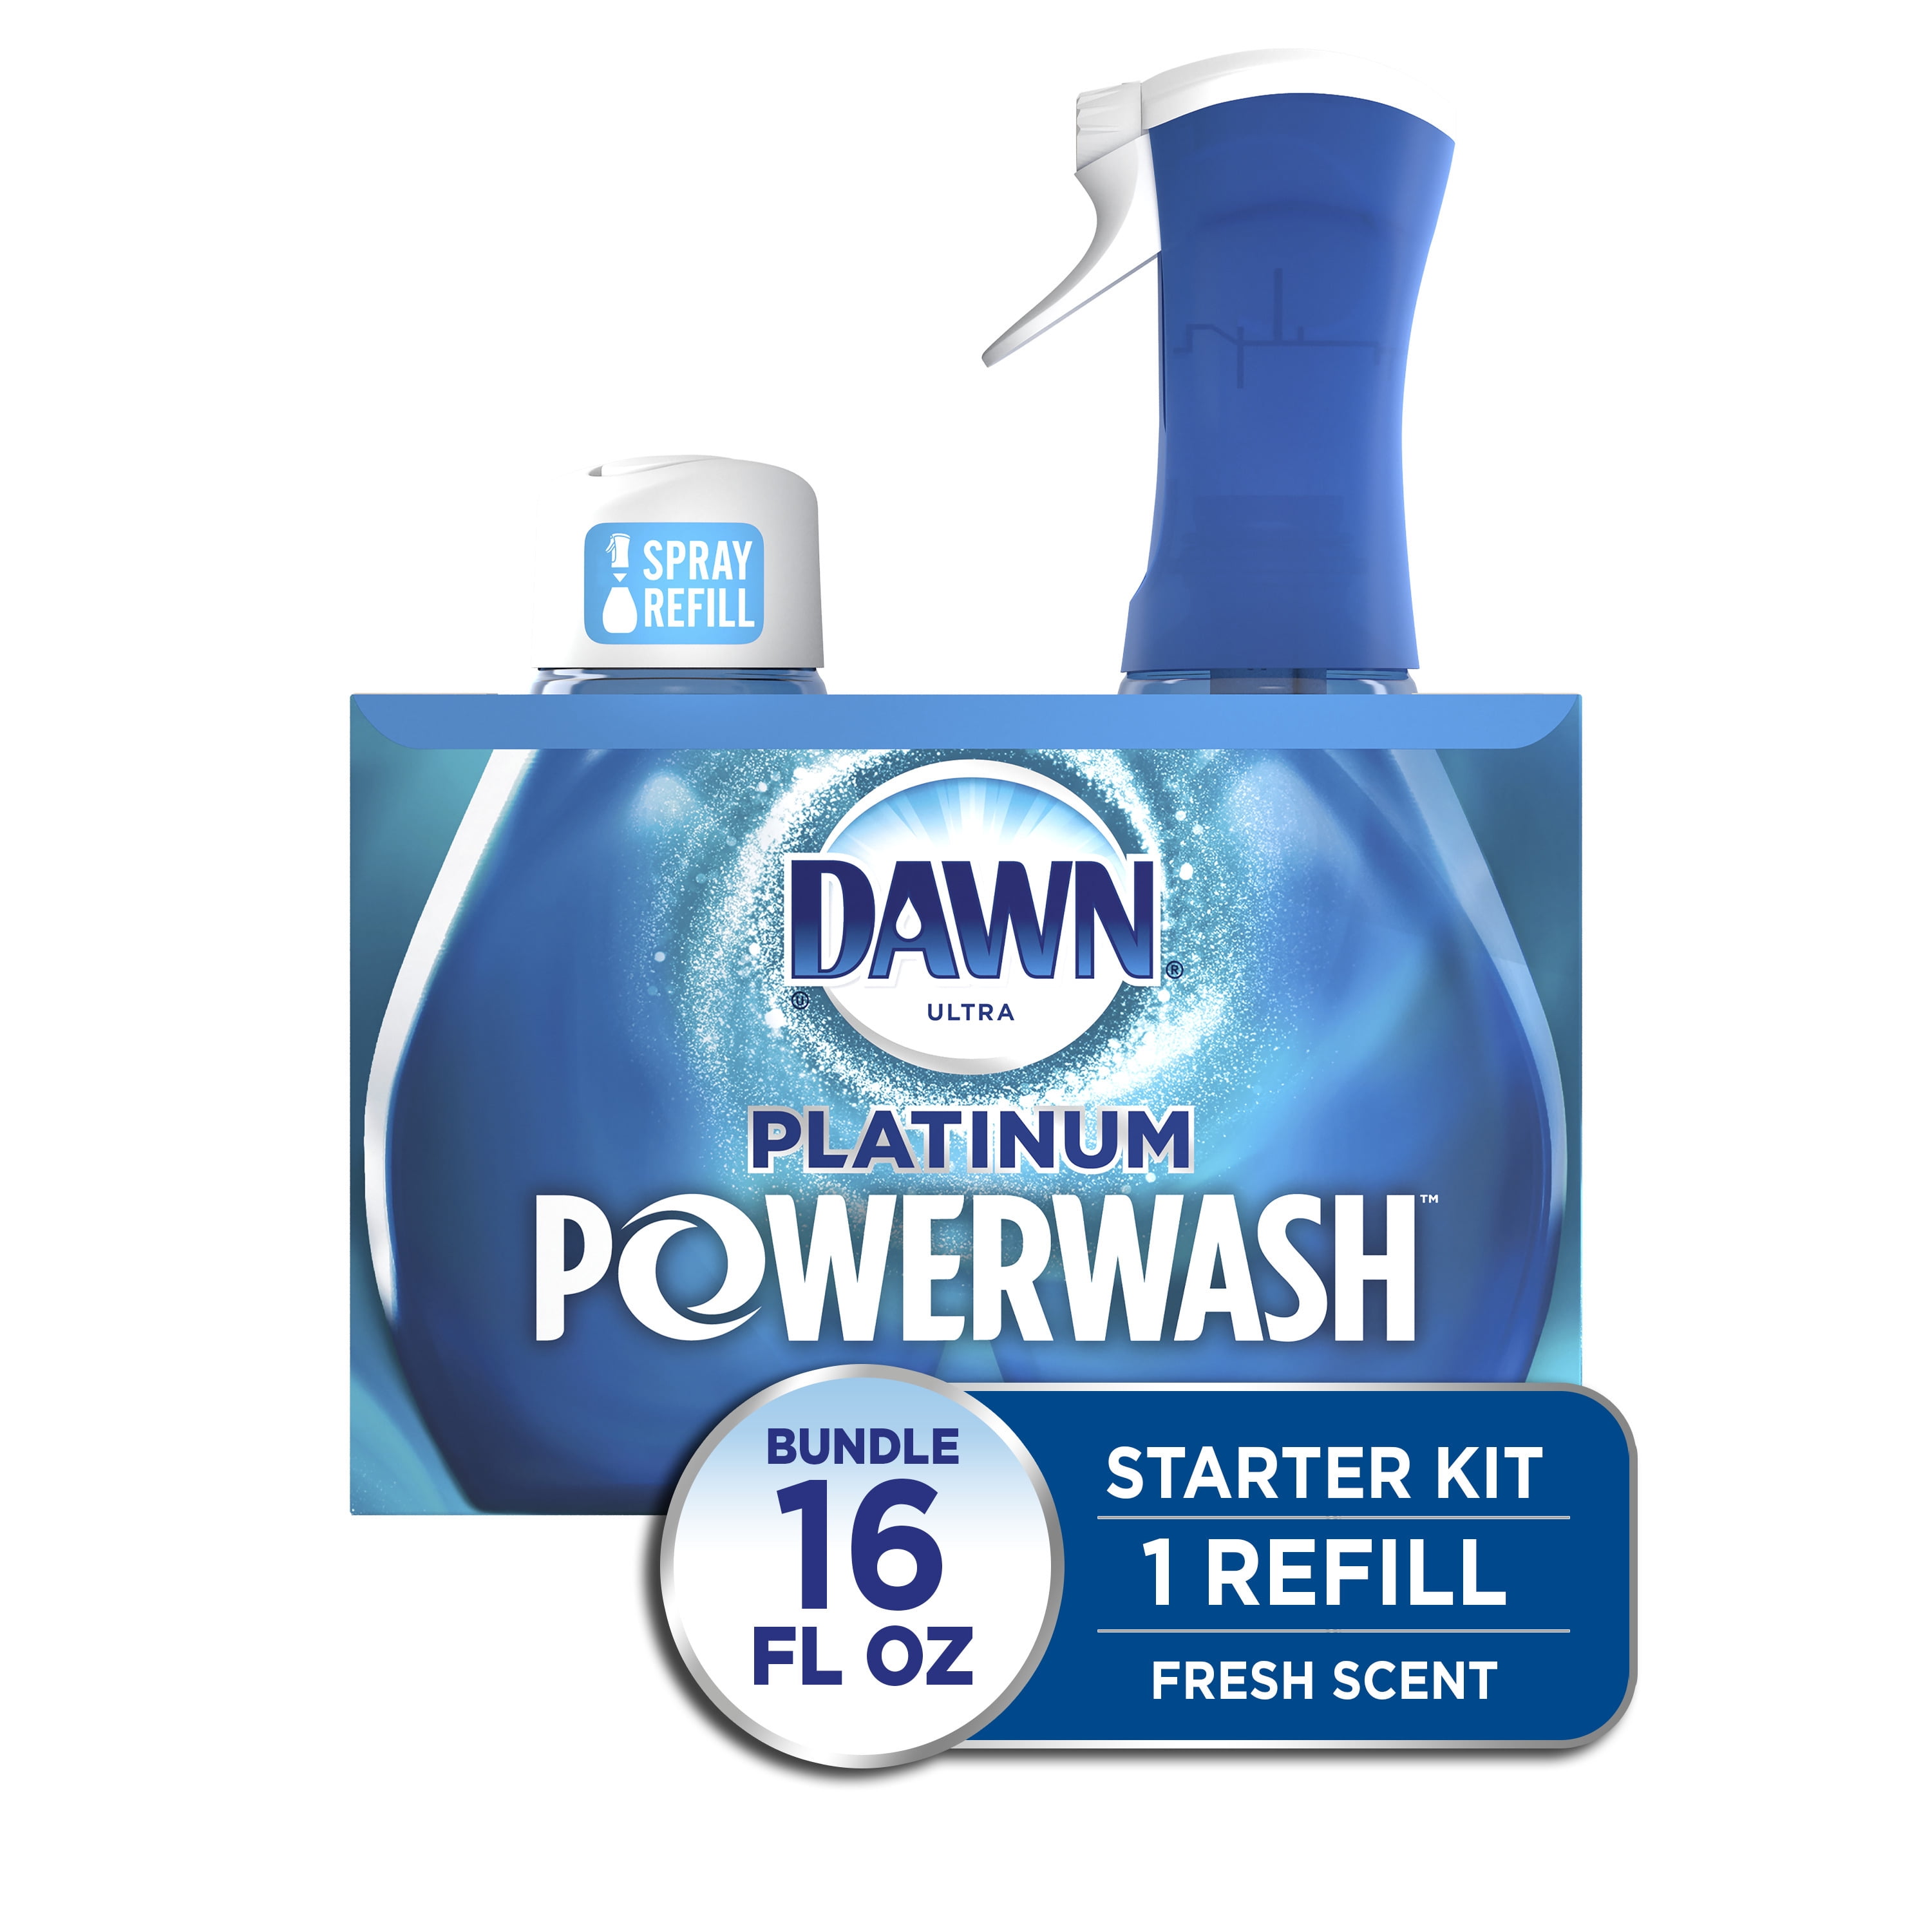 Dawn Powerwash Dish Spray Receives Good Housekeeping 2021